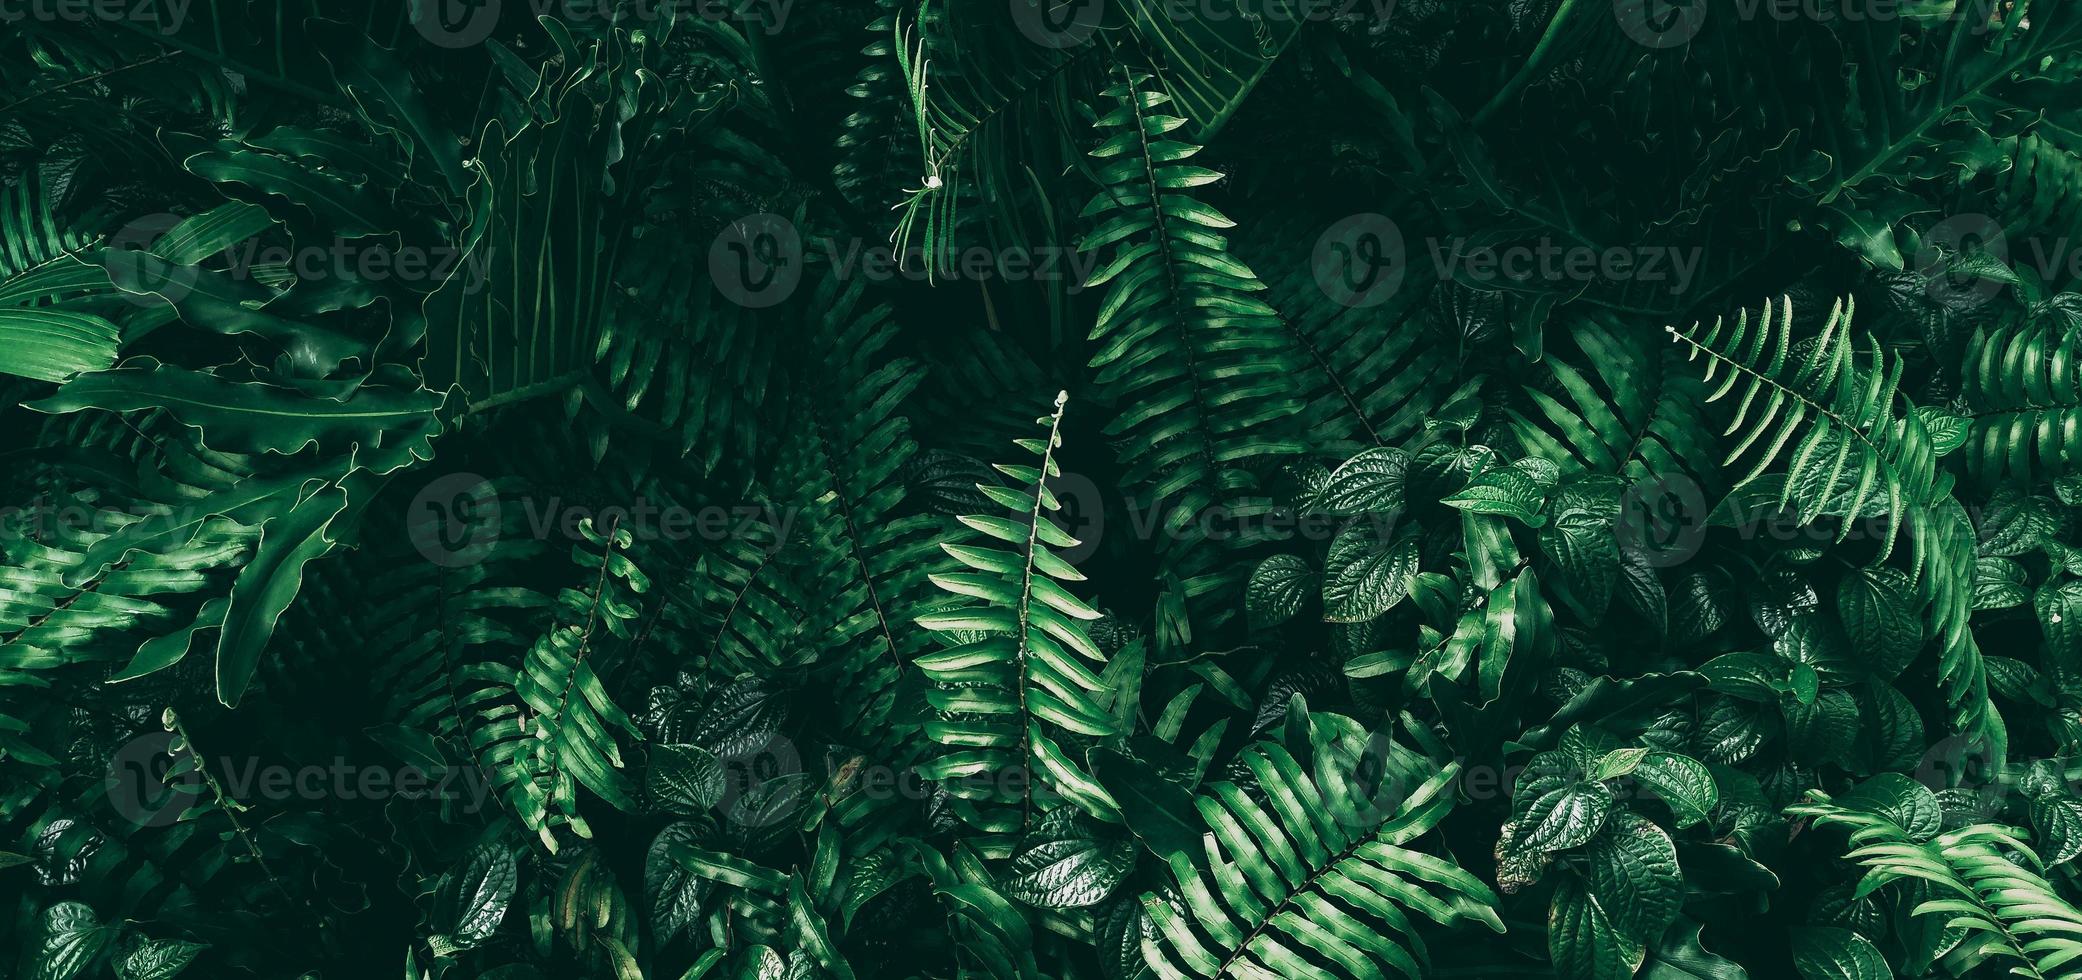 tropisch groen blad in donkere toon foto